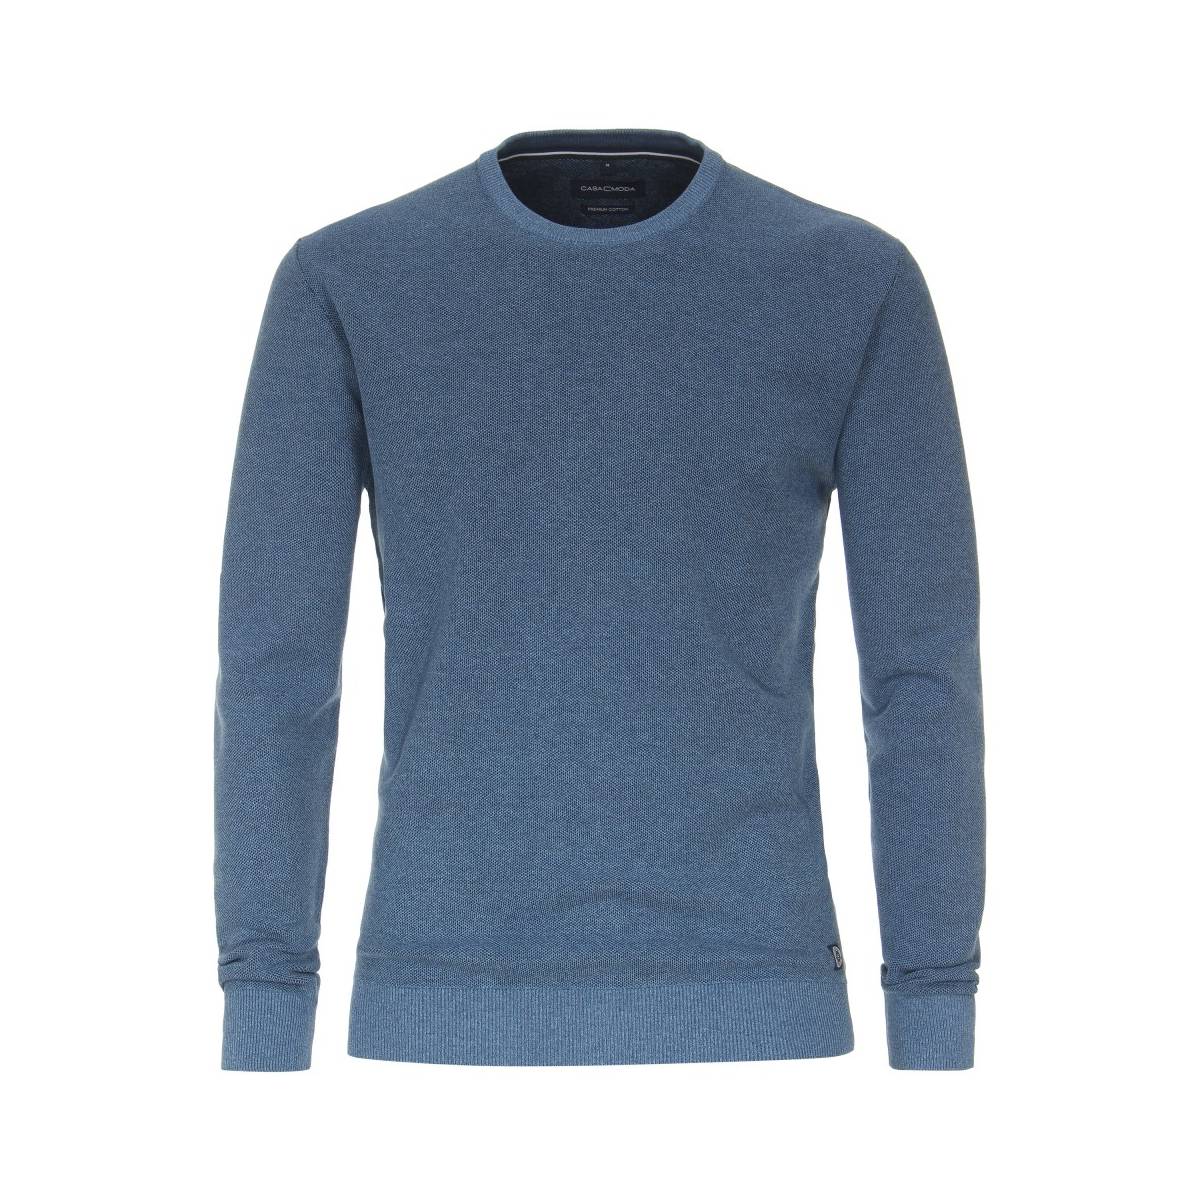 CASA MODA  tricot pull's en gilets blauw -  model 413705800 - Herenkleding tricot pull's en gilets blauw